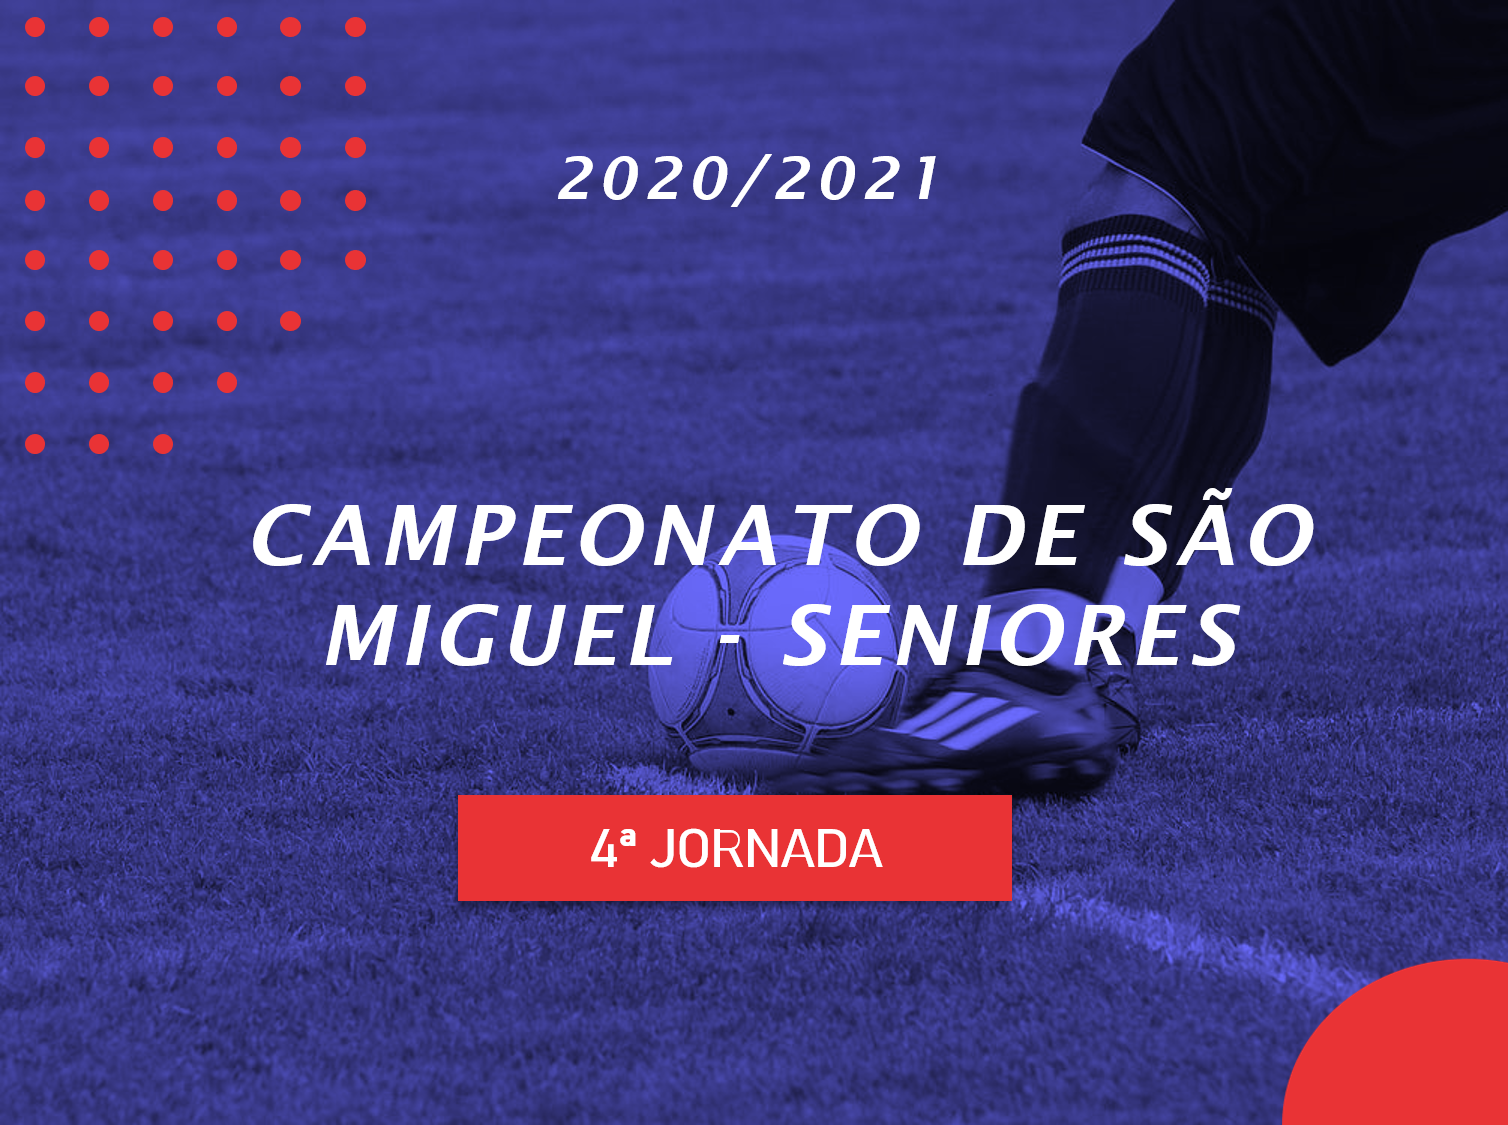 Campeonato de São Miguel - 4ª Jornada - Seniores - Antevisão